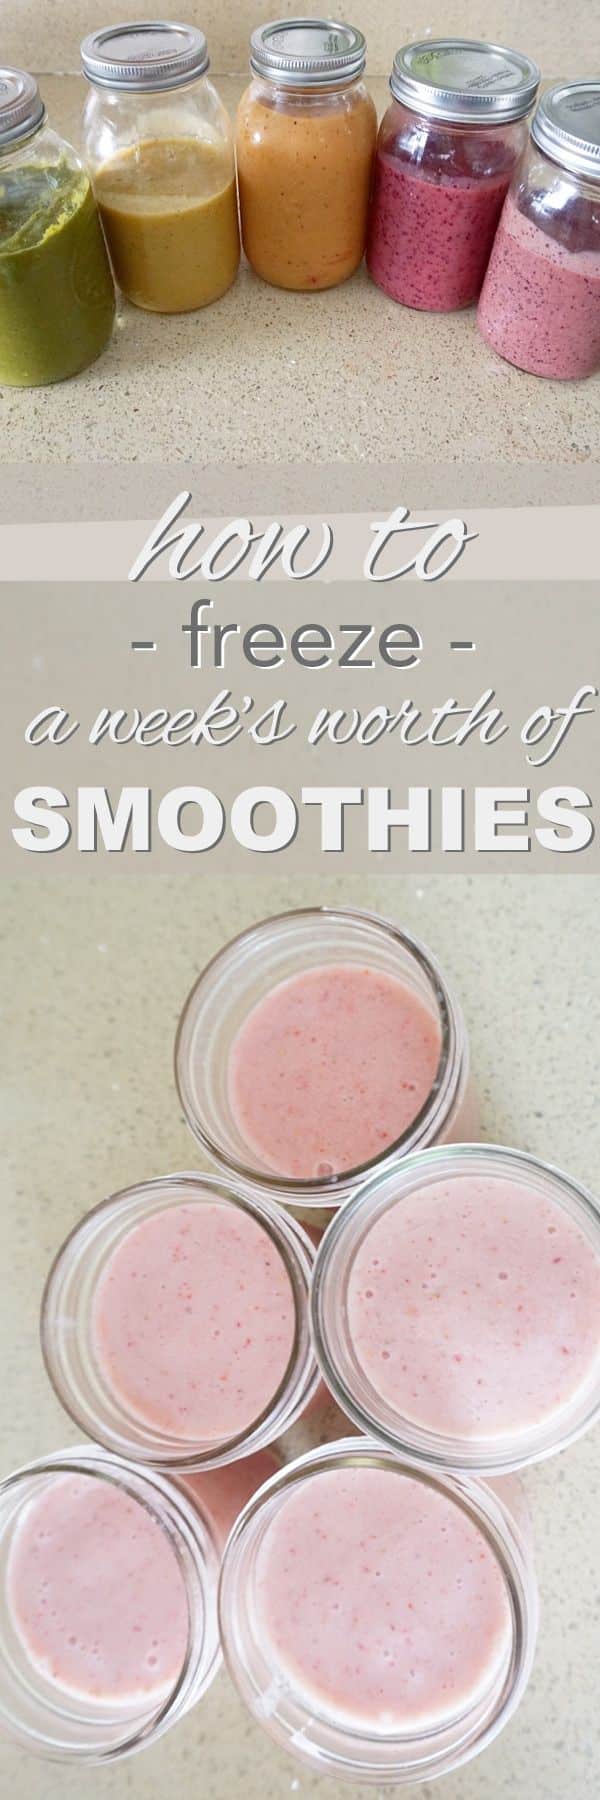 freezing smoothies